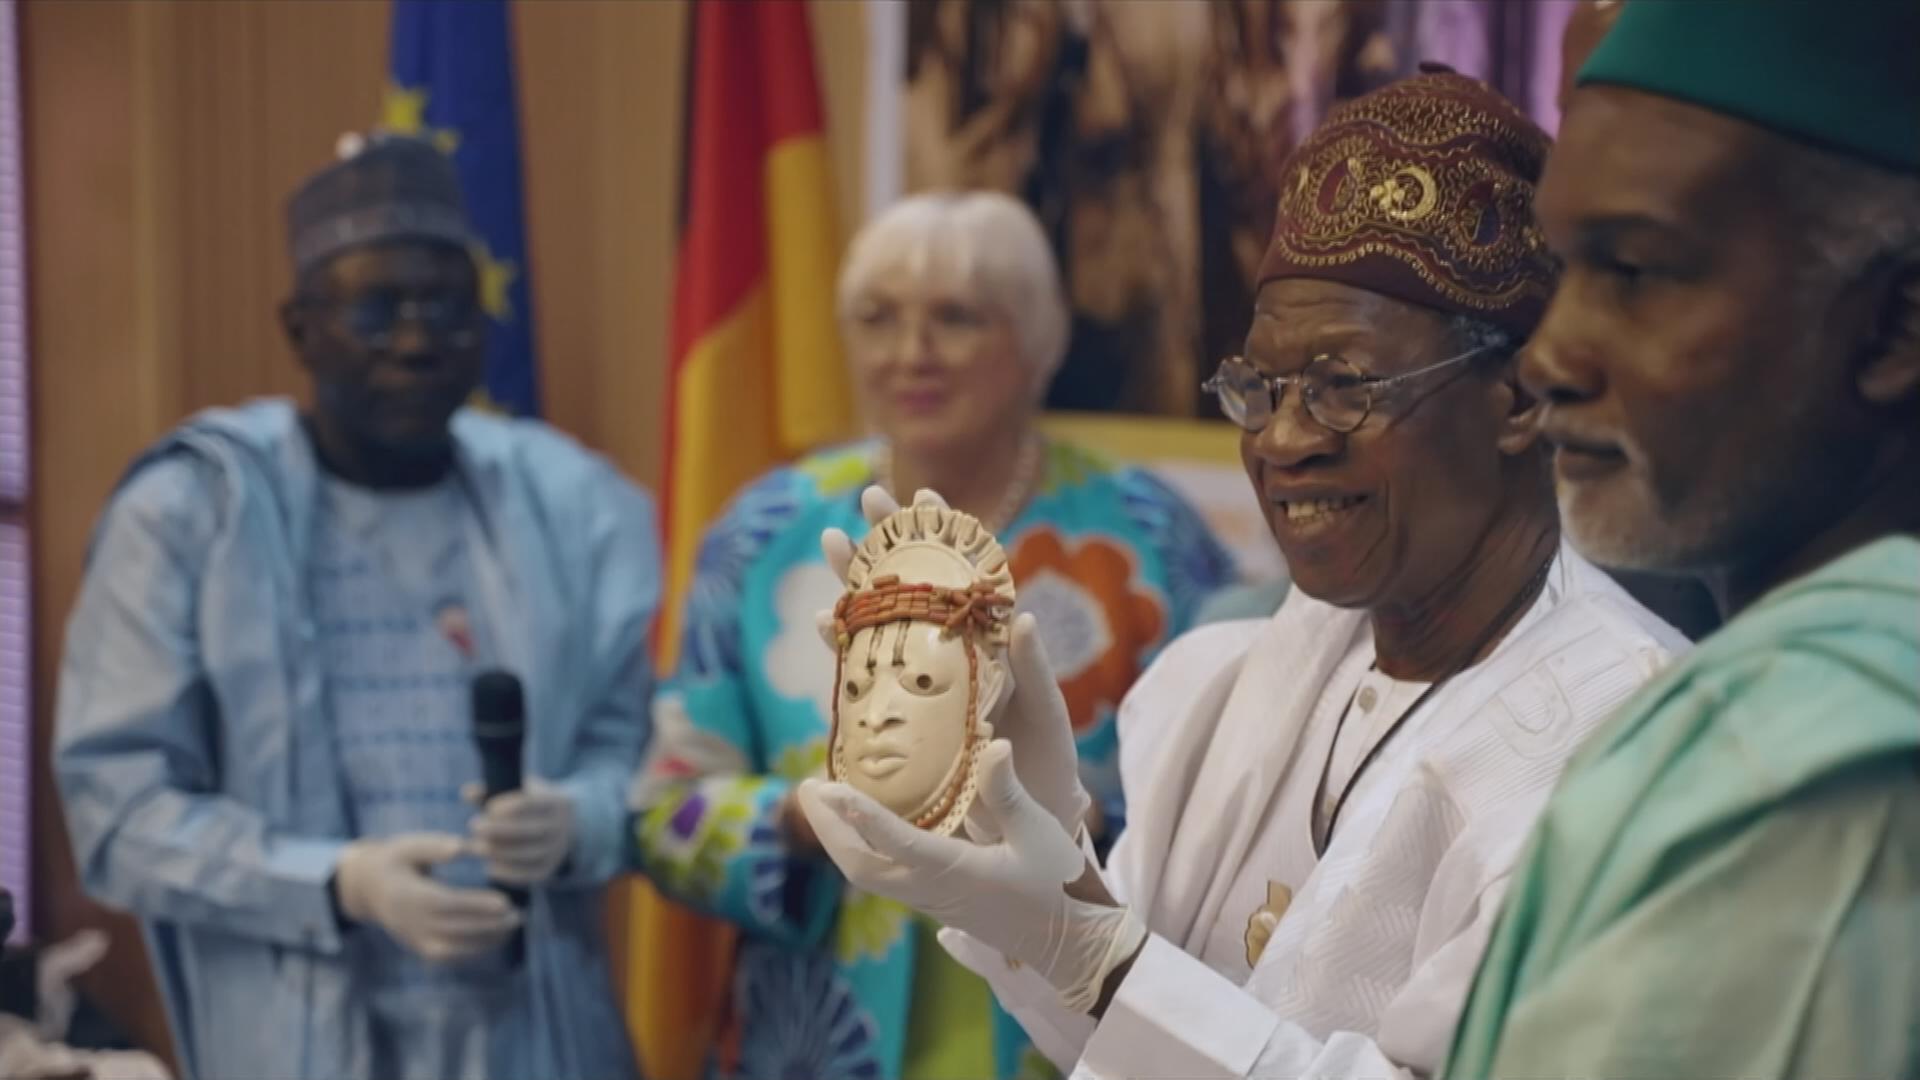 Bundesregierung gibt Benin-Bronzen an Nigeria zurück